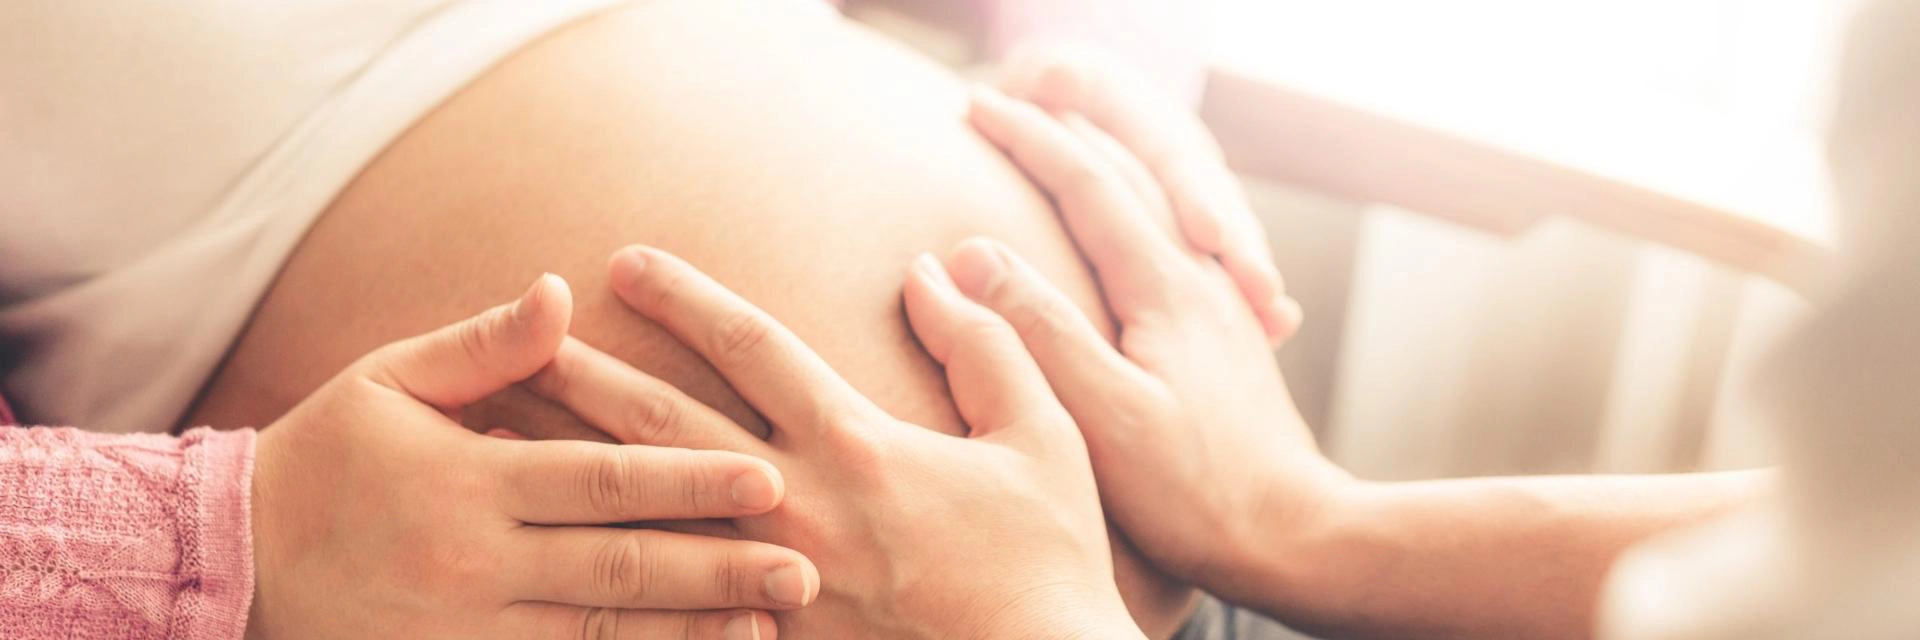 Surrogacy process in Ukraine